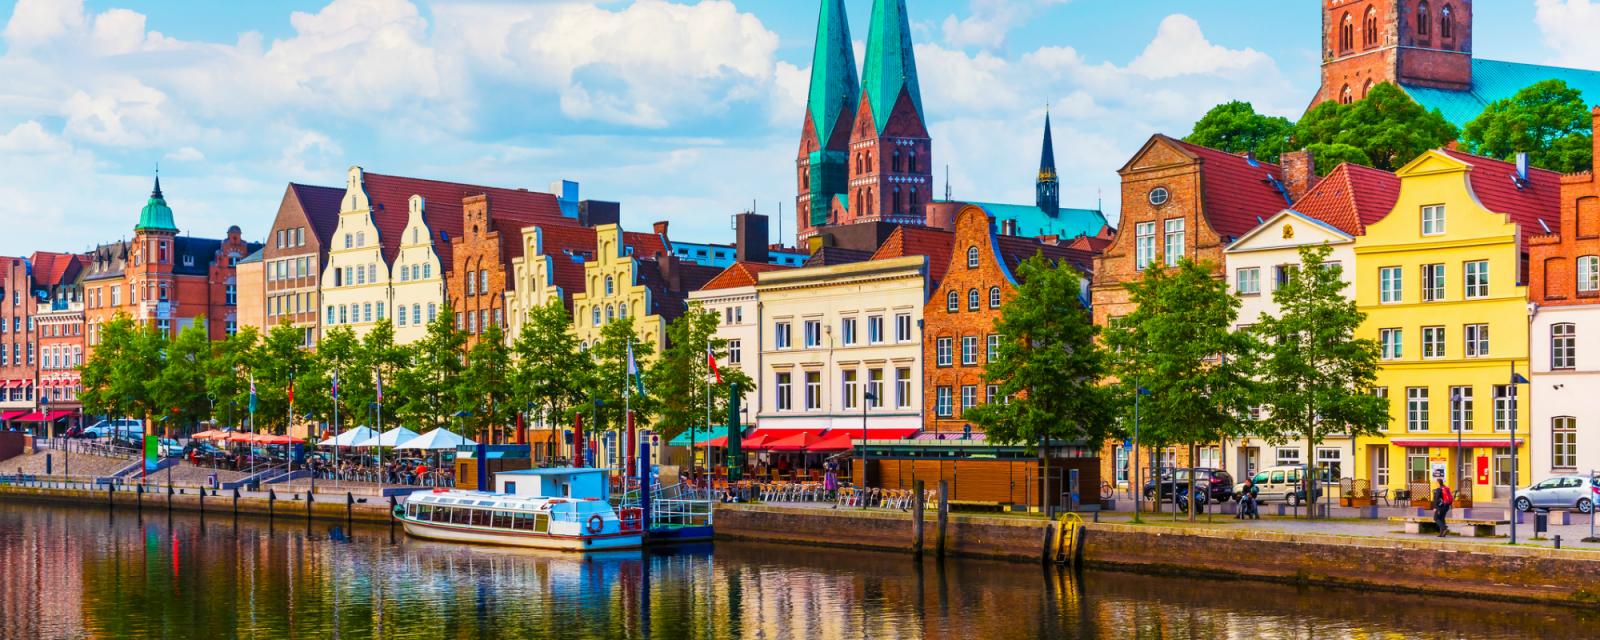 Zomers genieten: ontdek Lübeck vanaf het water 